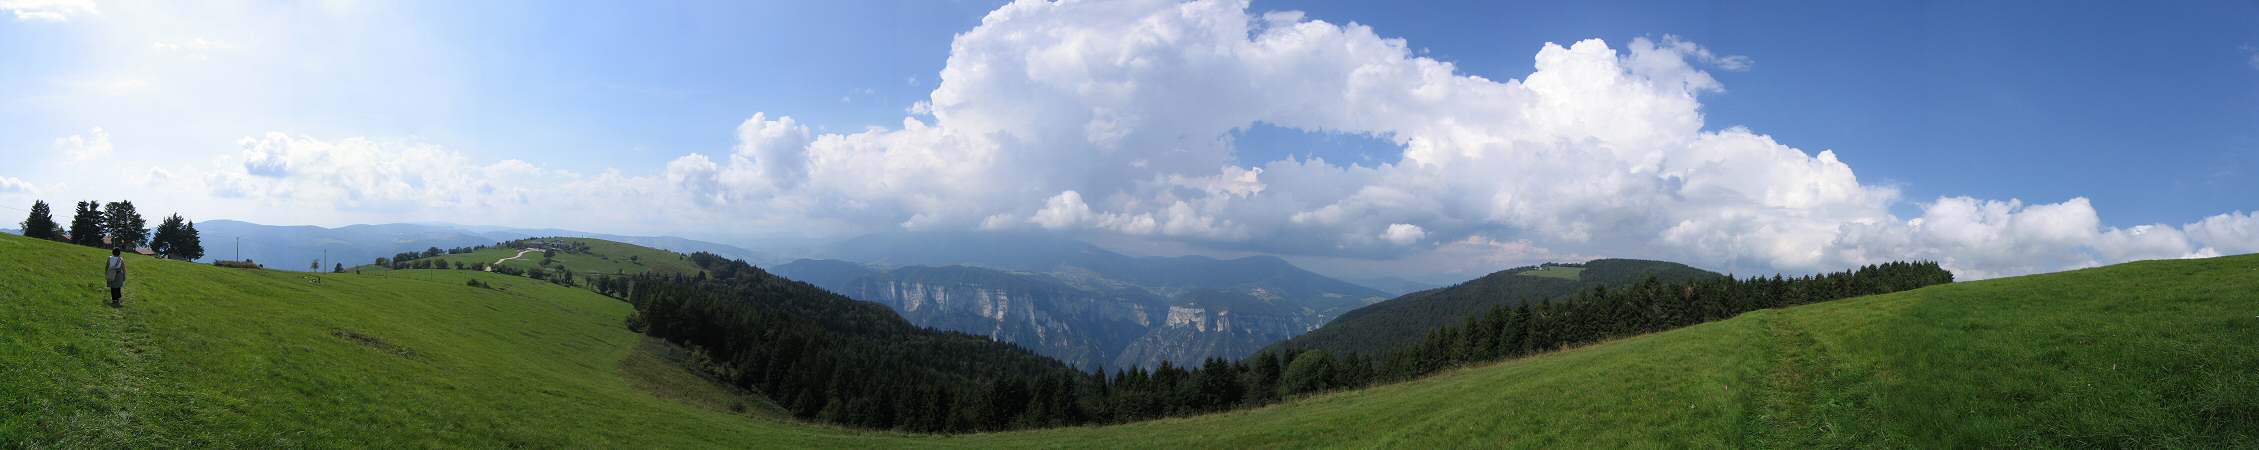 rifugio Alpe Madre, Col Fenilon, San Giovanni ai Colli Alti, Monte Grappa